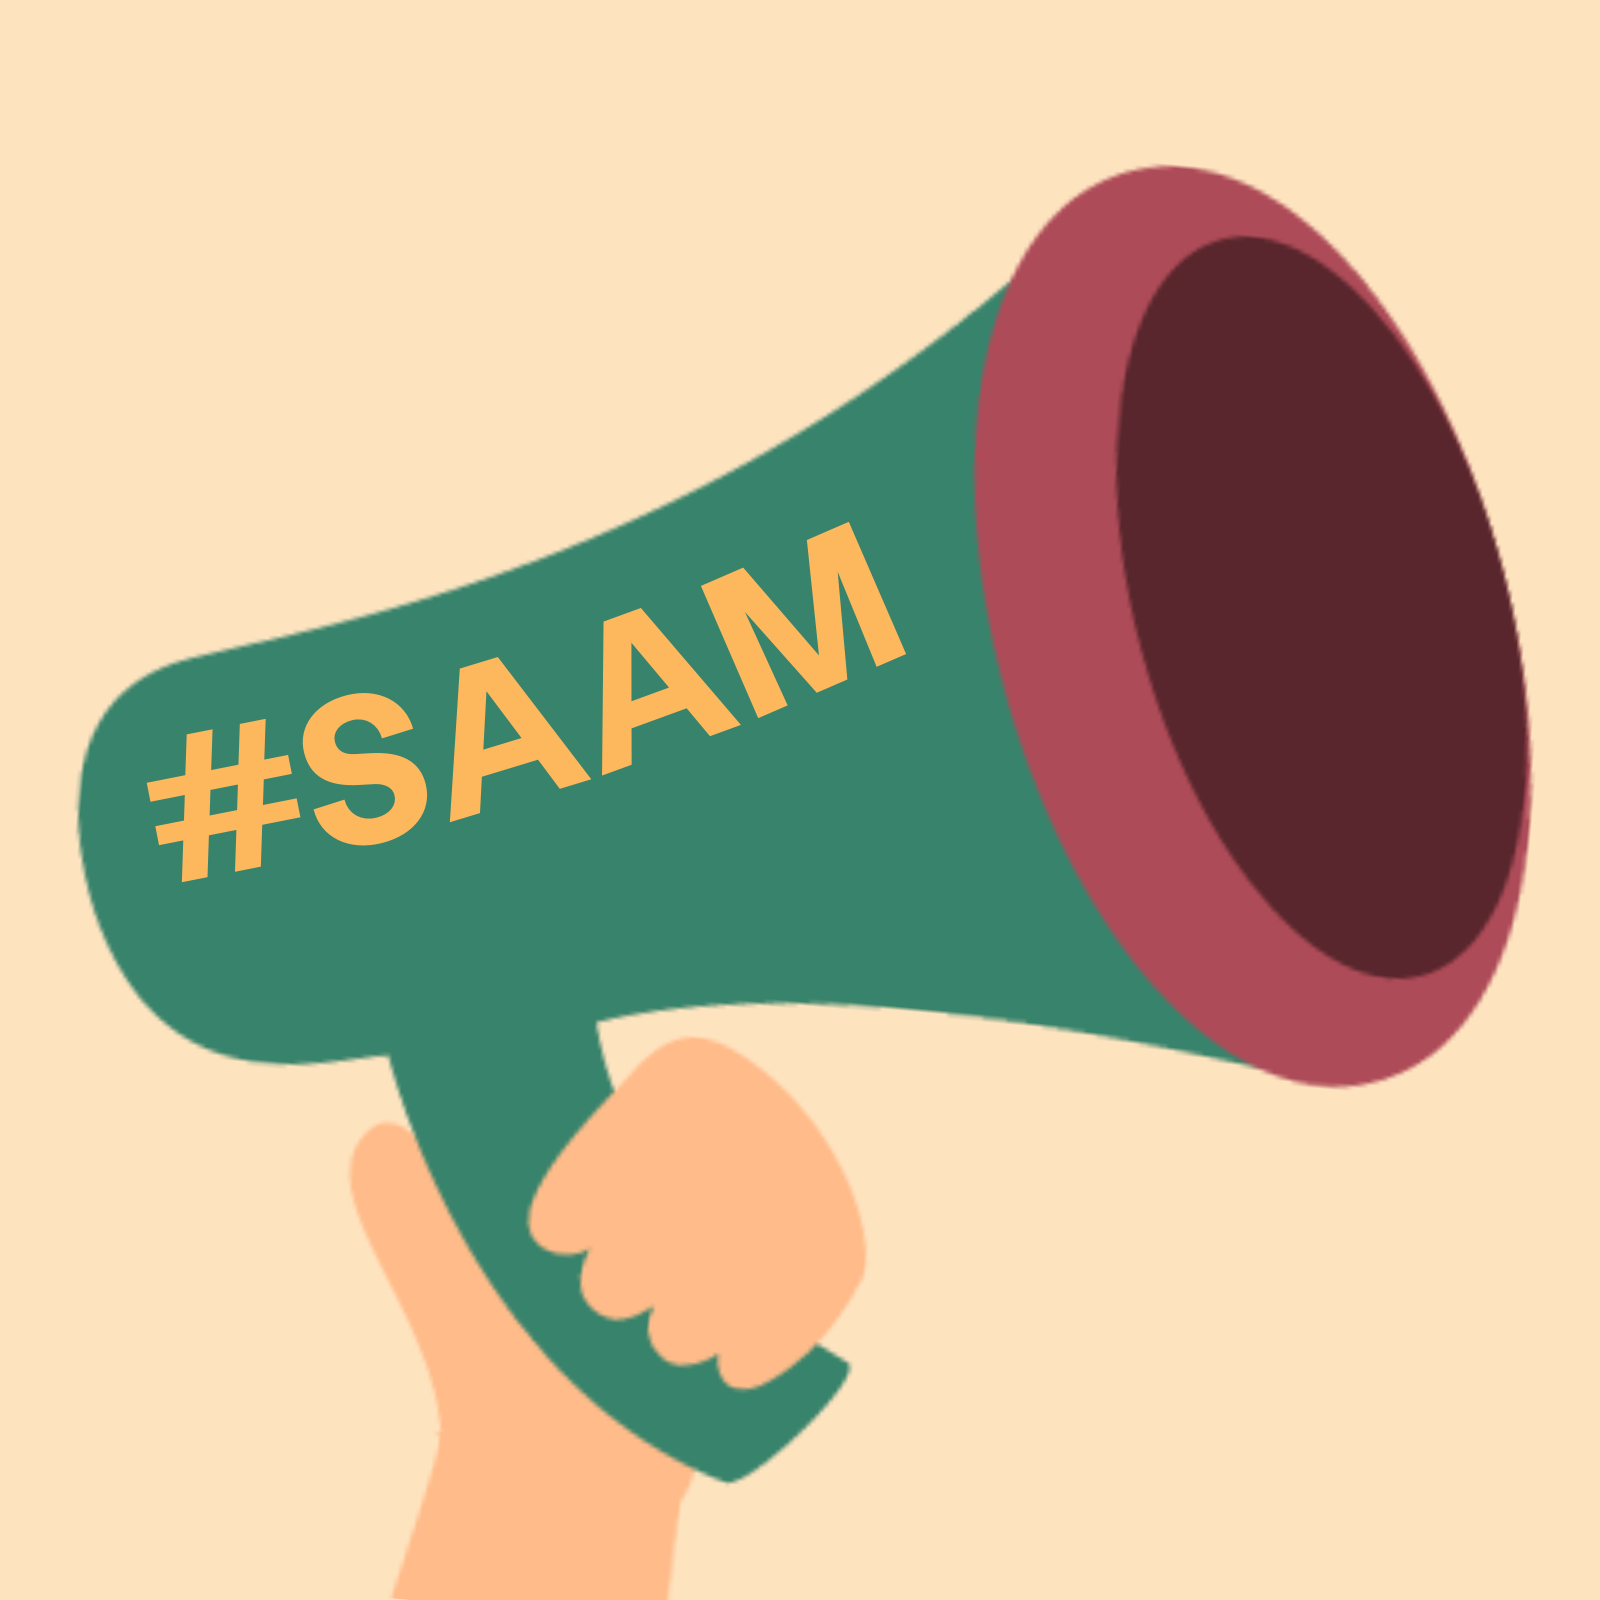 Tay cầm loa màu xanh lá cây có viền màu đỏ với dòng chữ #SAAM ở bên cạnh